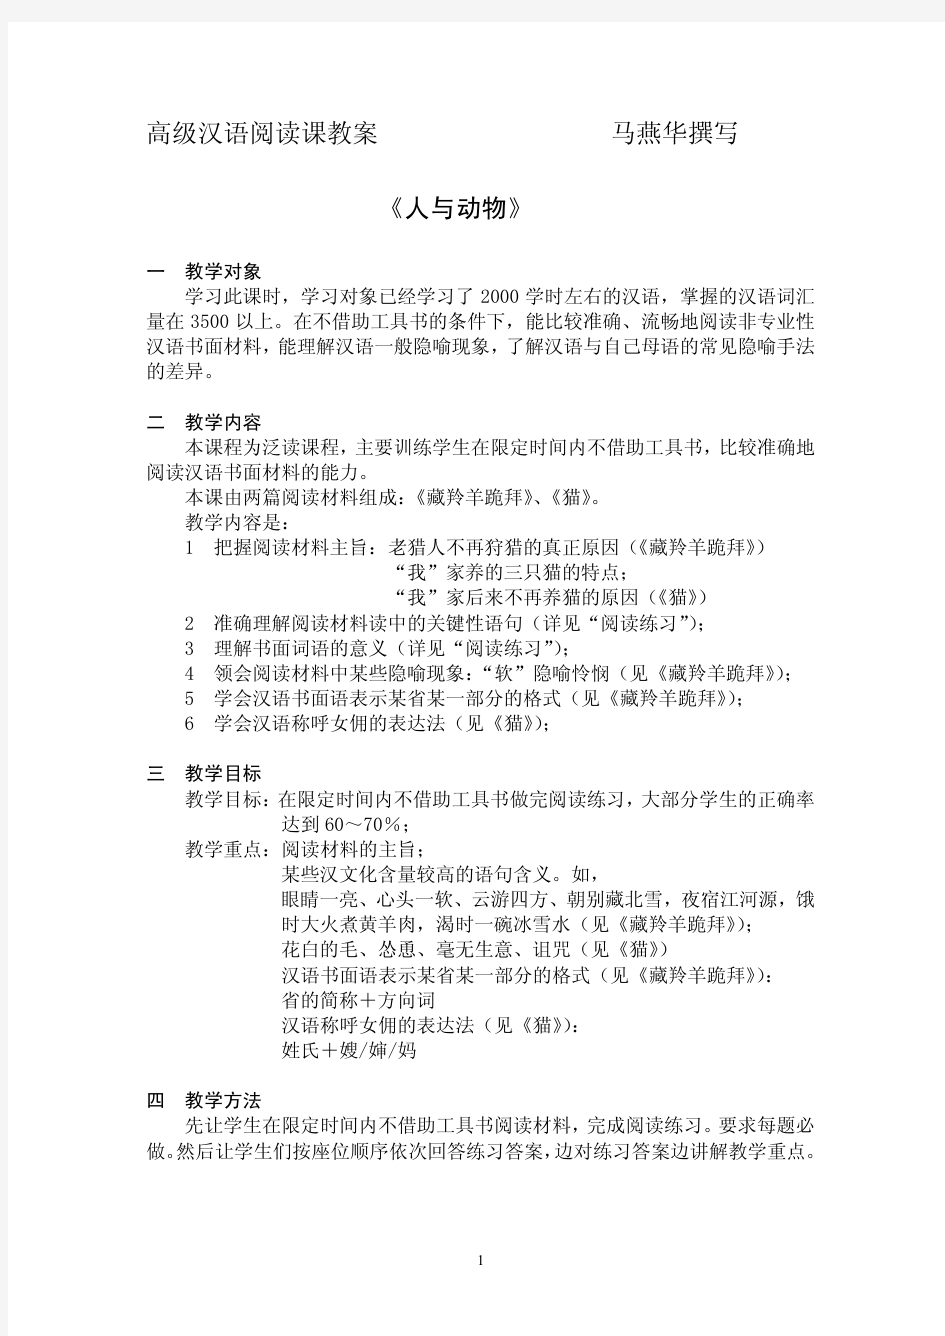 (马燕华)高级汉语阅读课教案